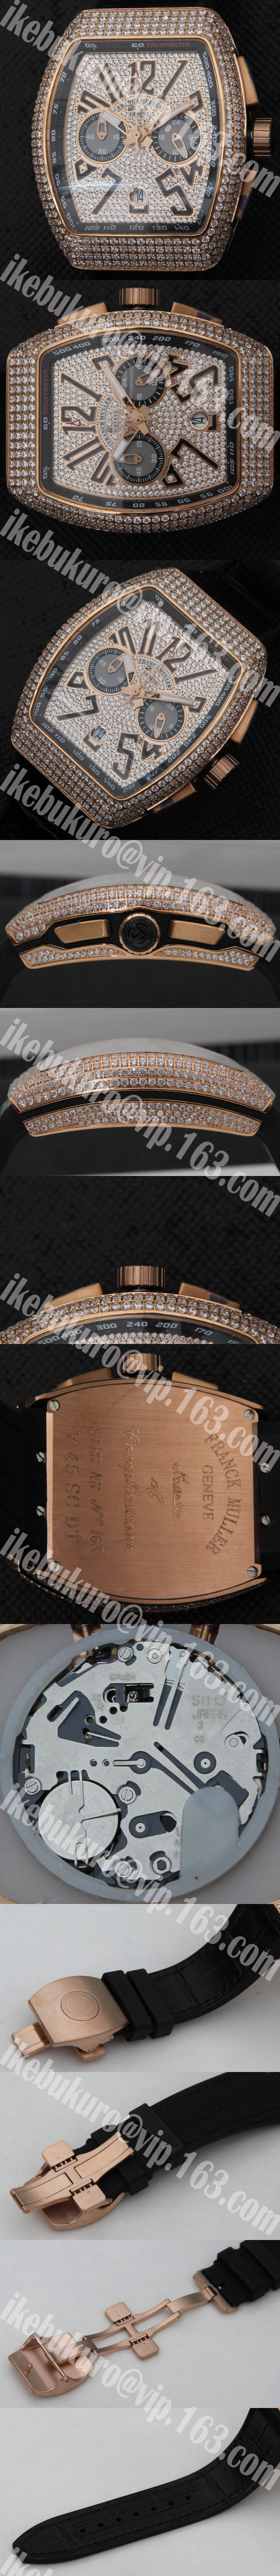 高級腕時計 フランクミュラー FRANCK MULLER コピー カサブランカ クォーツムーブメント搭載 全面ダイヤ文字盤 スモセコ